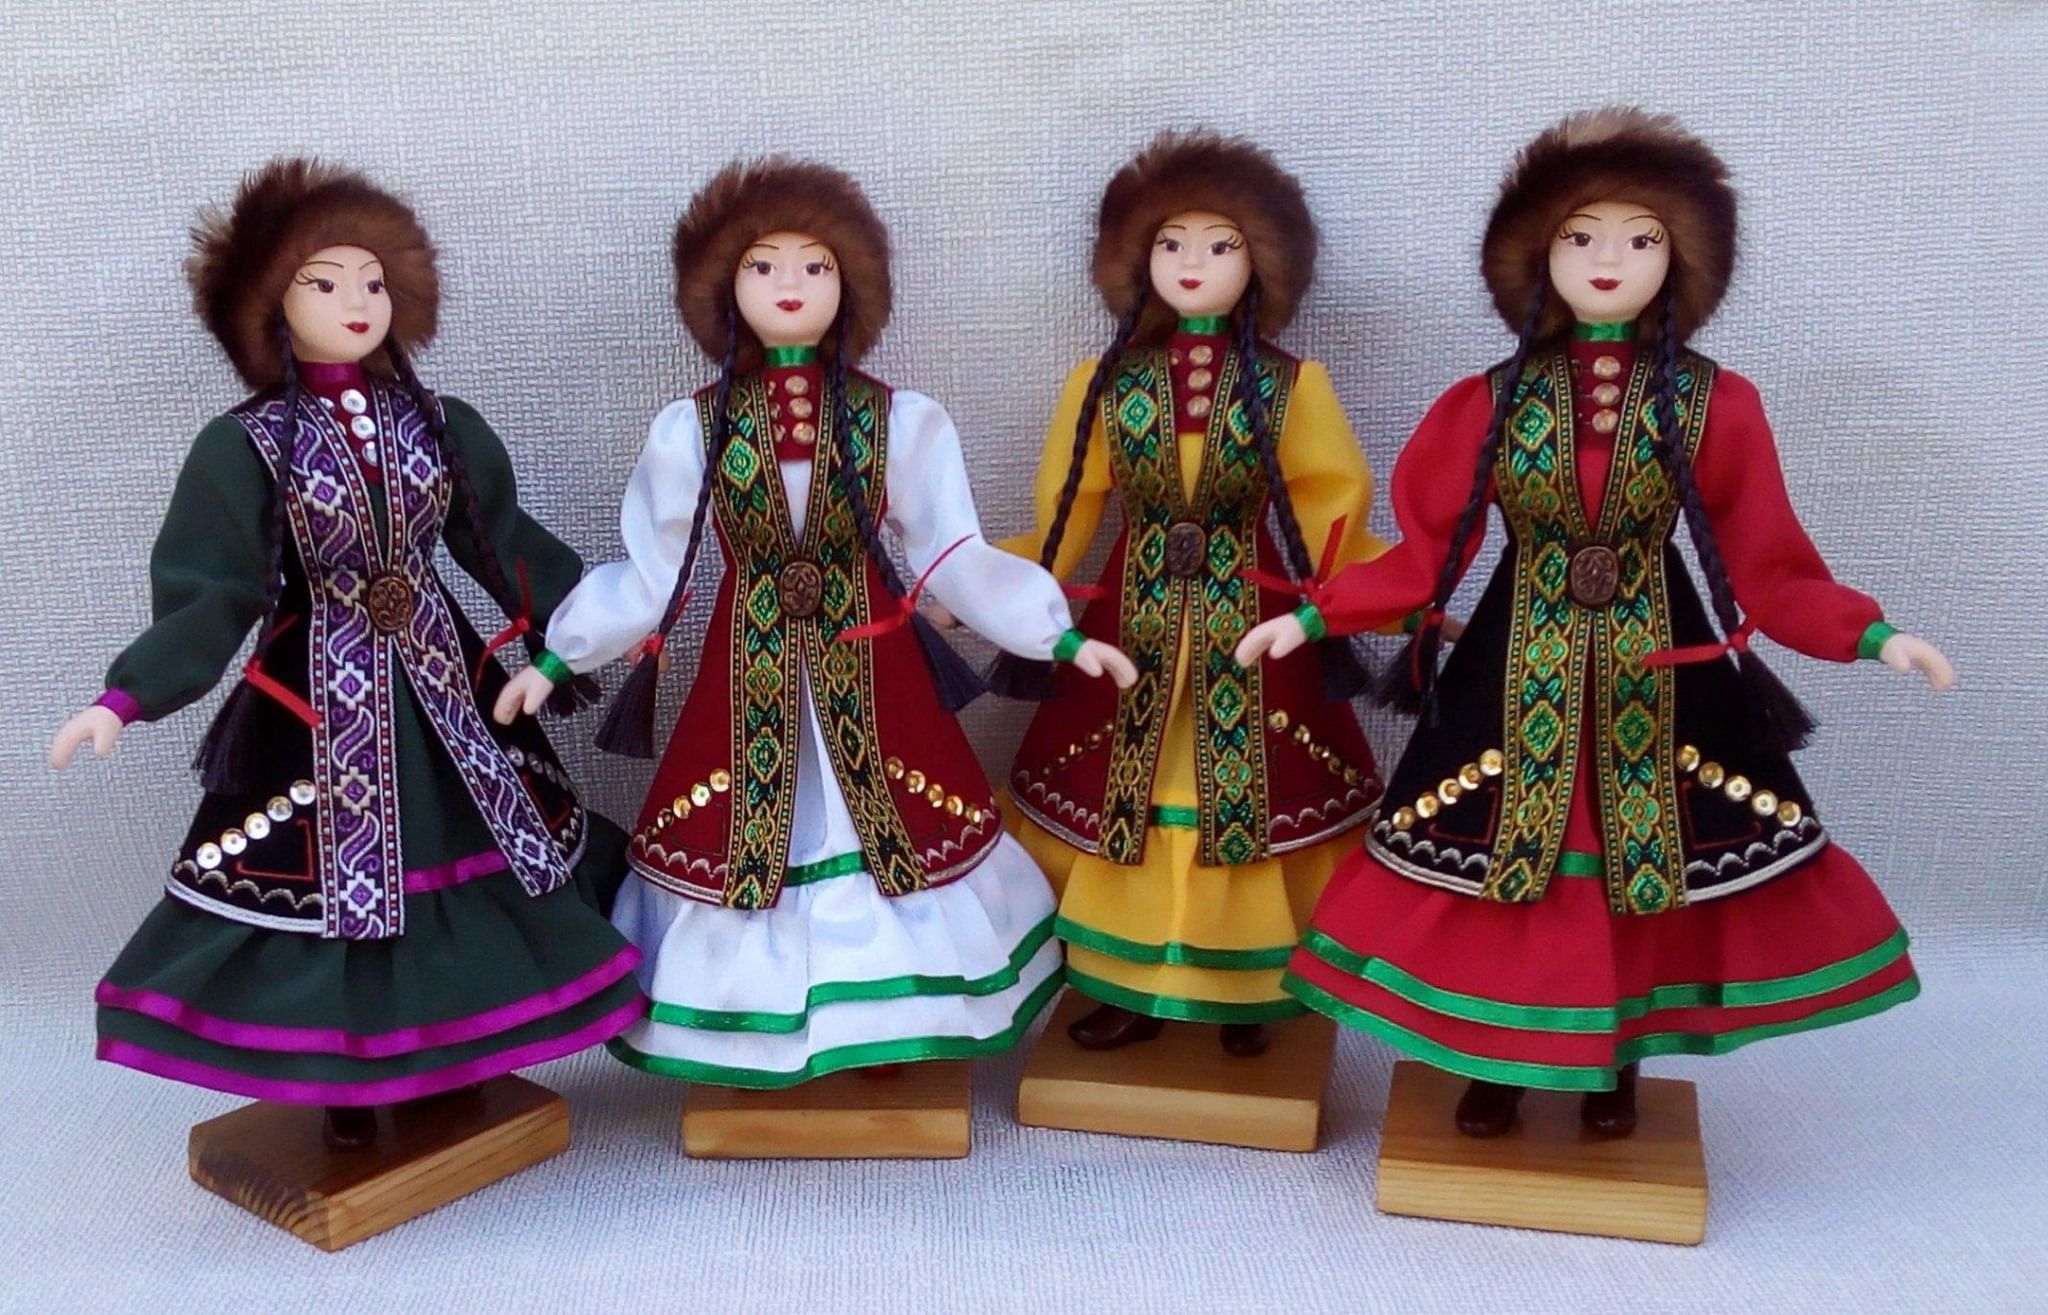 Башкирский национальный костюм для детей